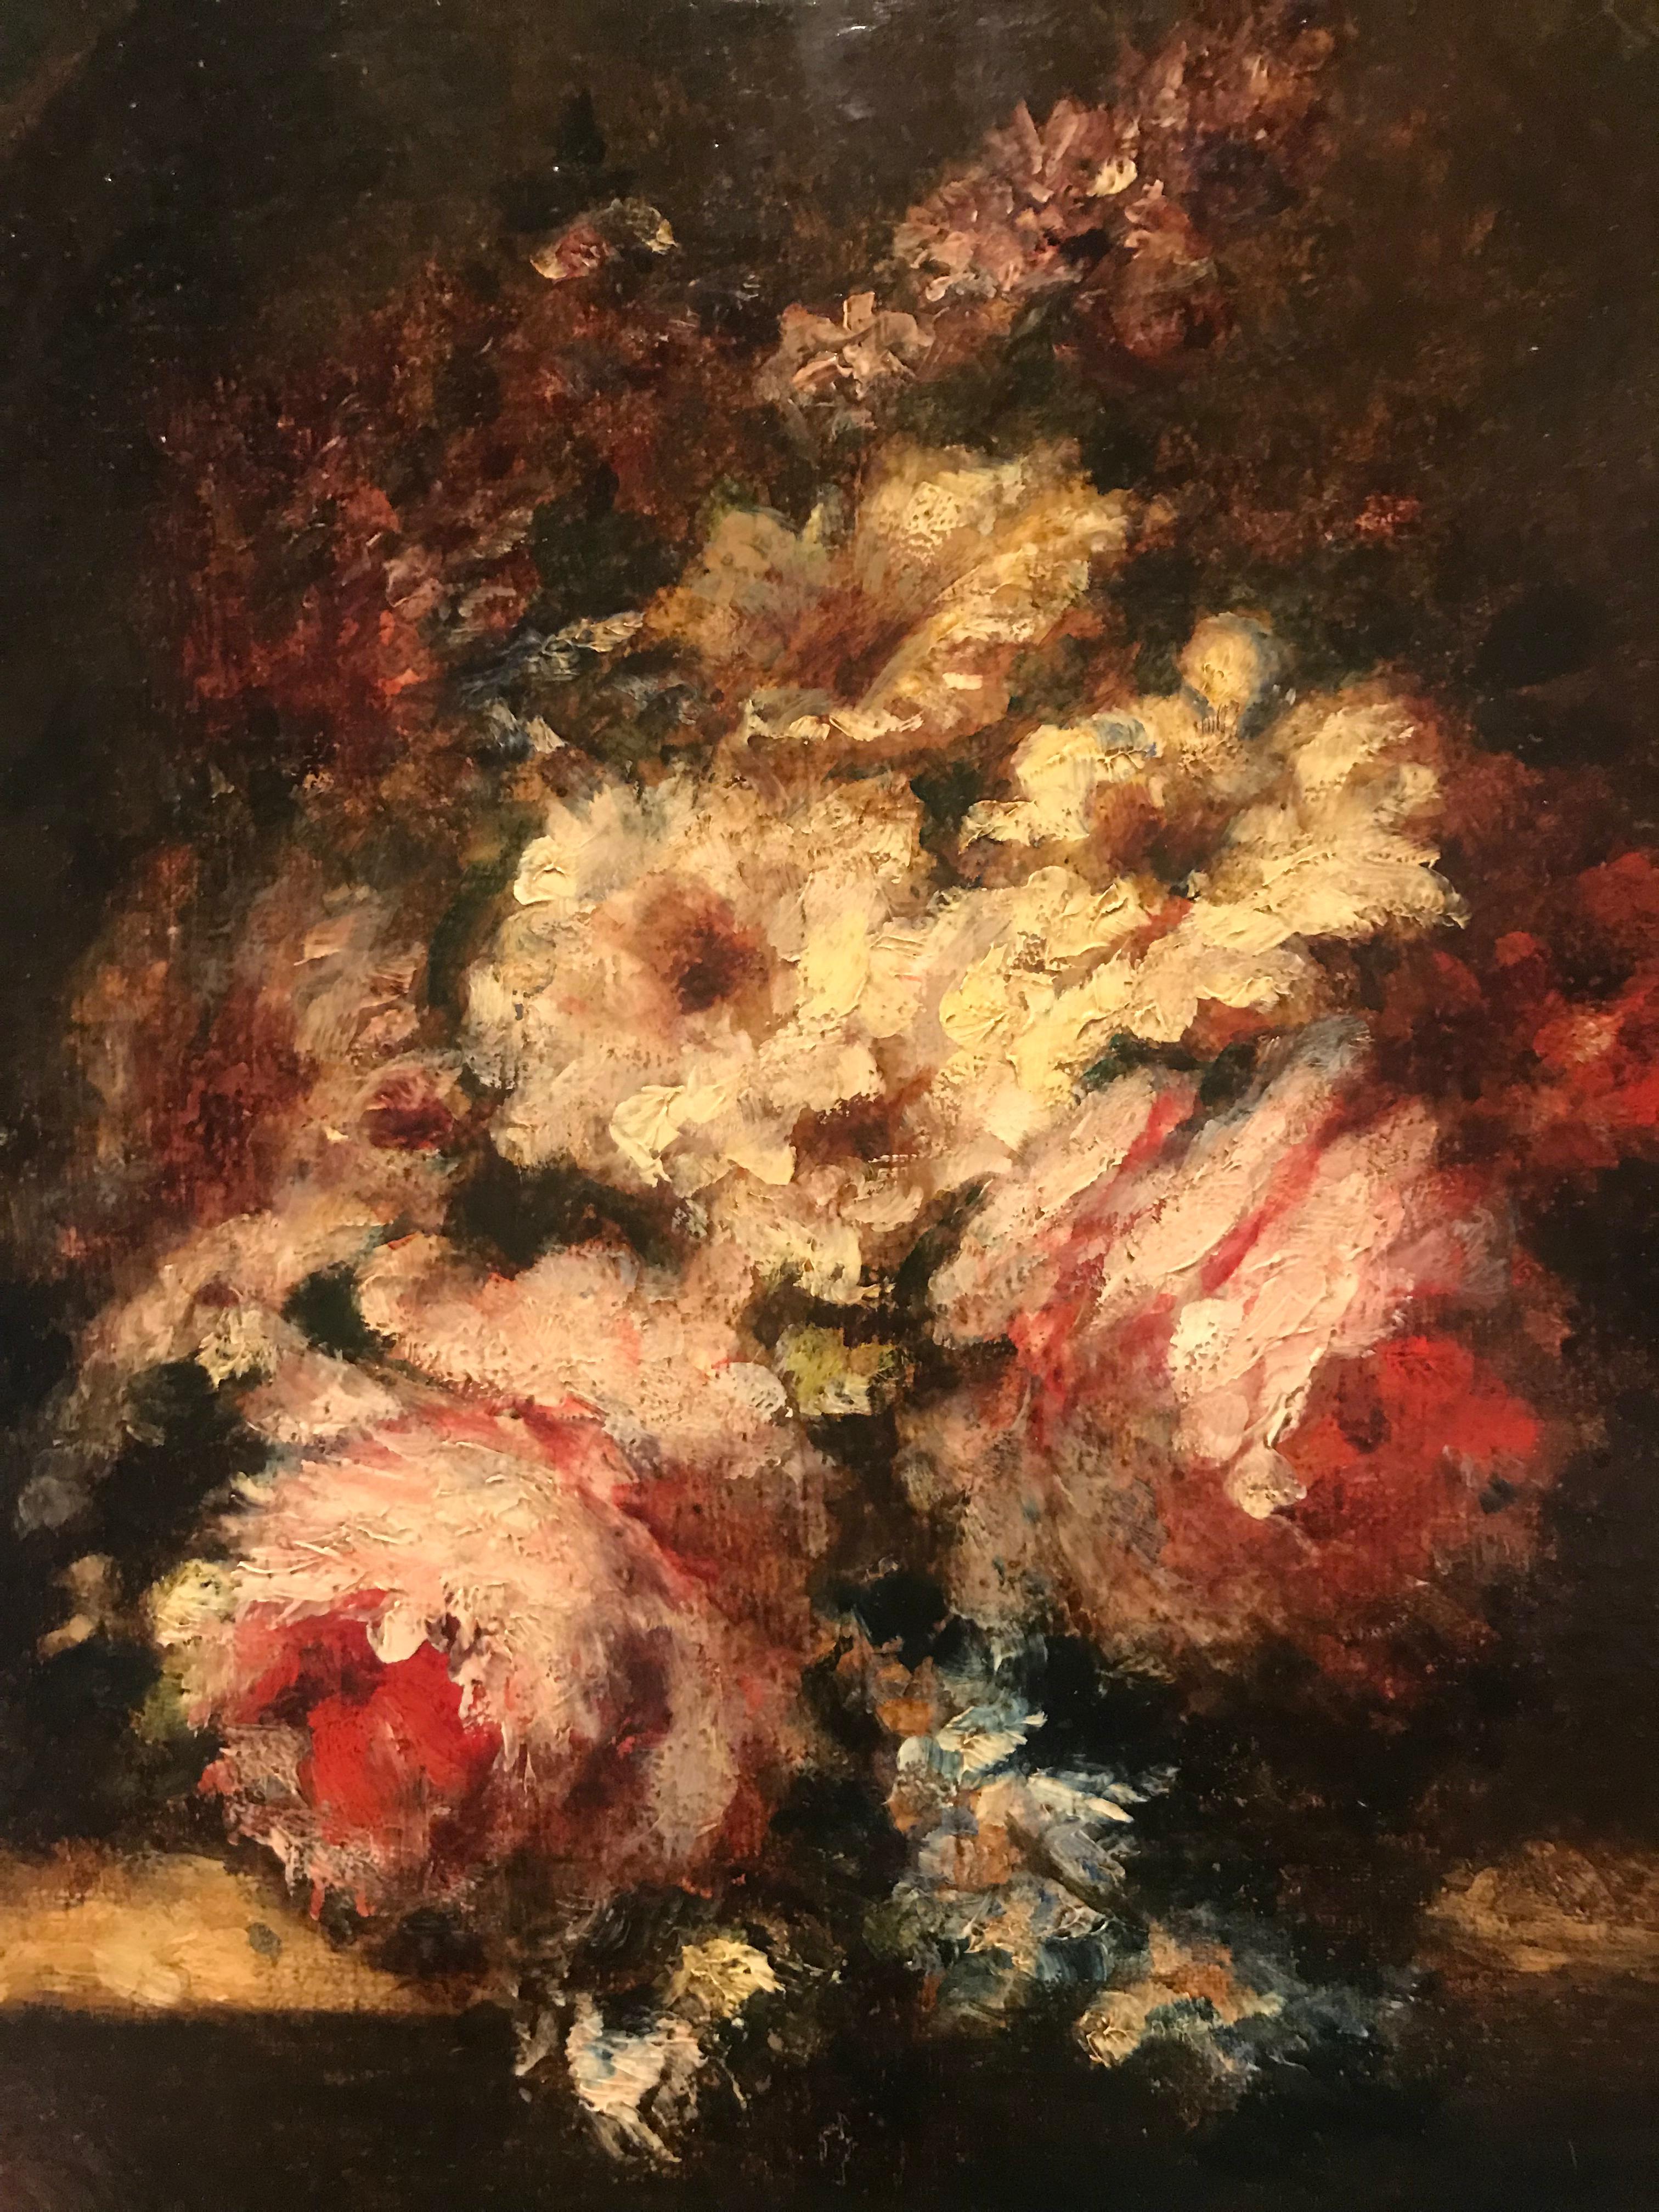 Bouquet de roses et giroflées sur entablement - Barbizon School Painting by Narcisse Virgilio Díaz de la Peña